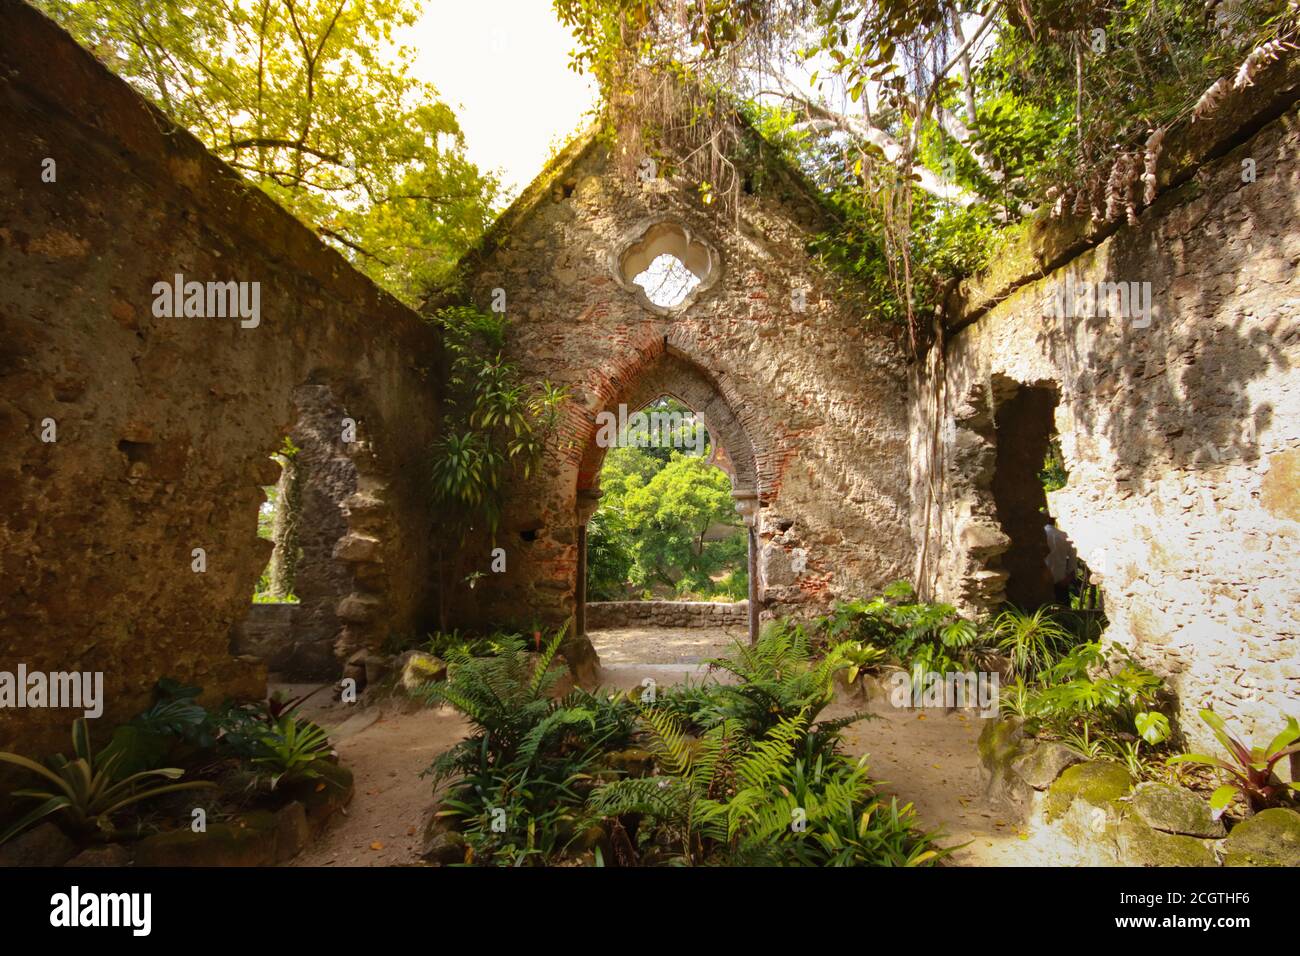 Ruines d'une ancienne chapelle dans une forêt couverte de végétation. Sintra Portugal Banque D'Images